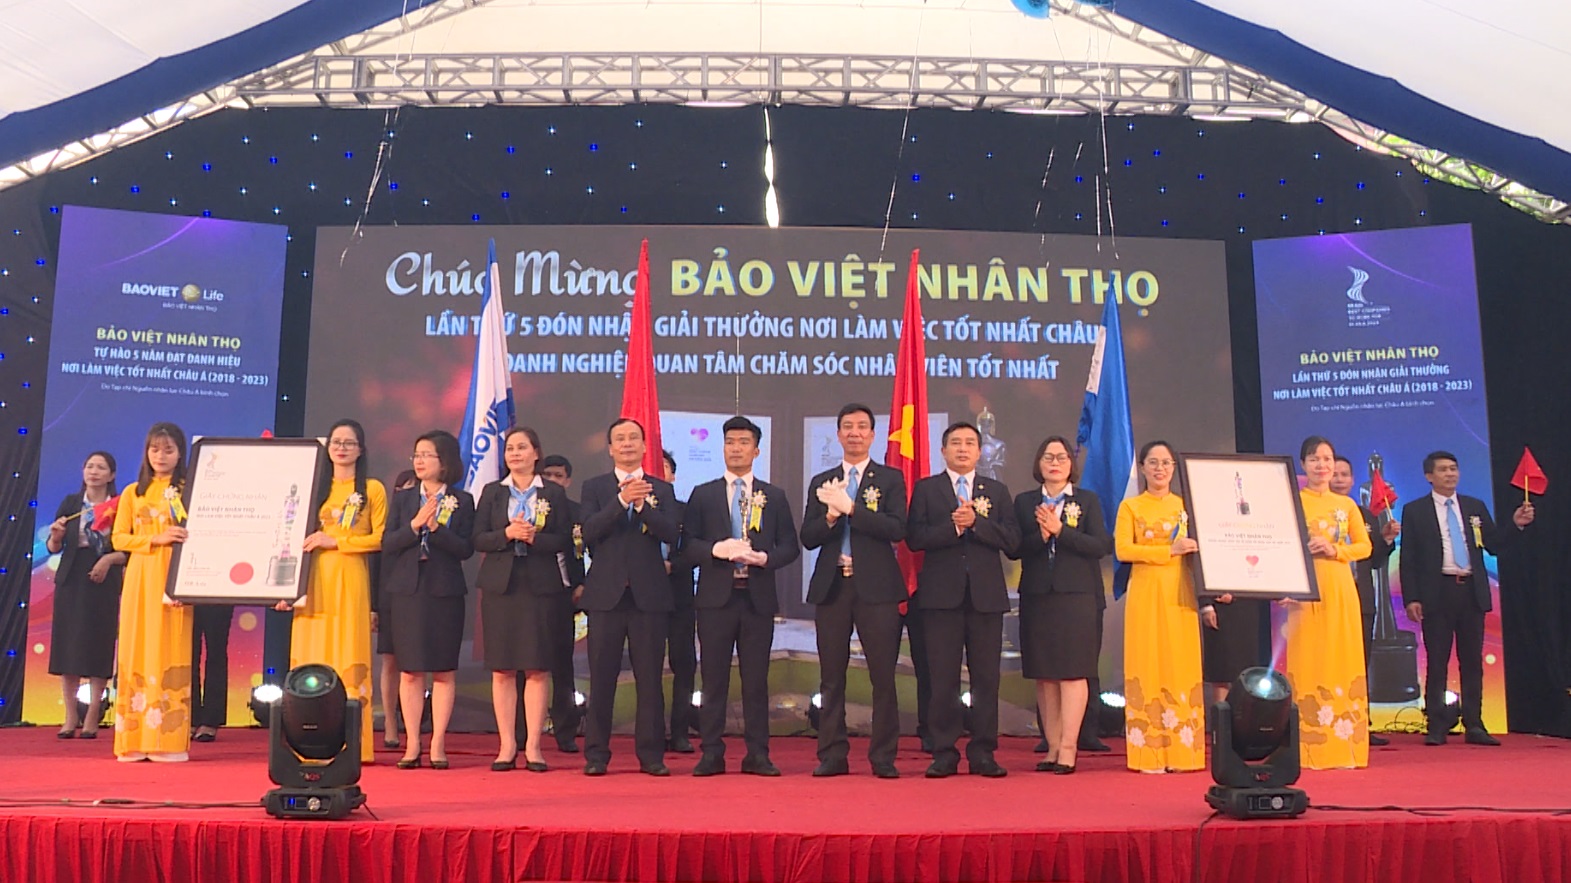 Bảo Việt nhân thọ Hải Dương đón giải thưởng nơi làm việc tốt nhất Châu Á